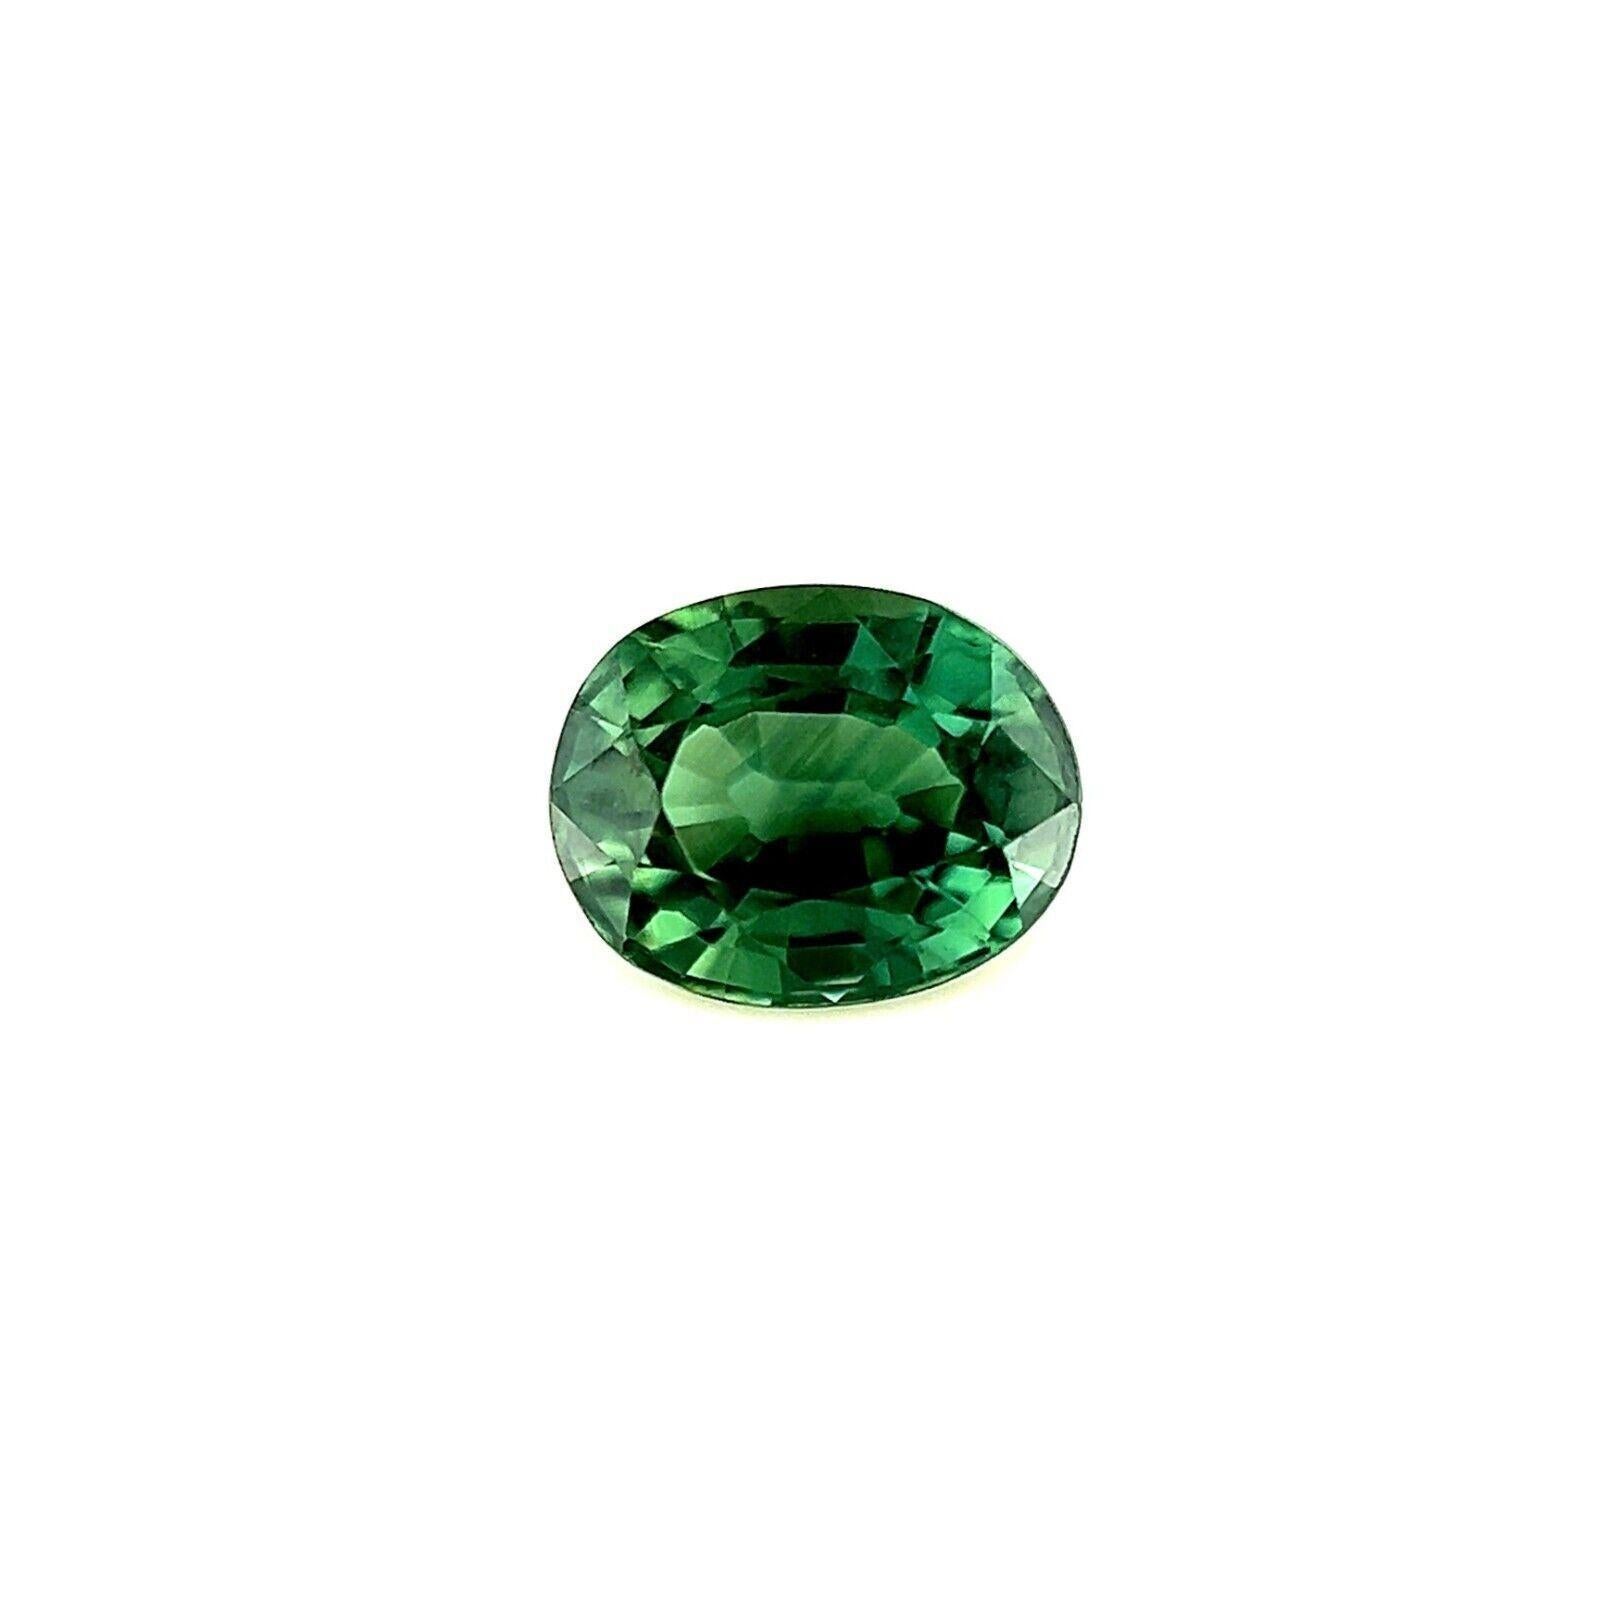 0.54ct Saphir australien bleu vert naturel taille ovale pierre précieuse rare 5x4mm VS

Pierre précieuse saphir vert bleu sarcelle d'Australie.
0,53 carat avec une belle et unique couleur bleu sarcelle verte et une excellente clarté, une pierre très